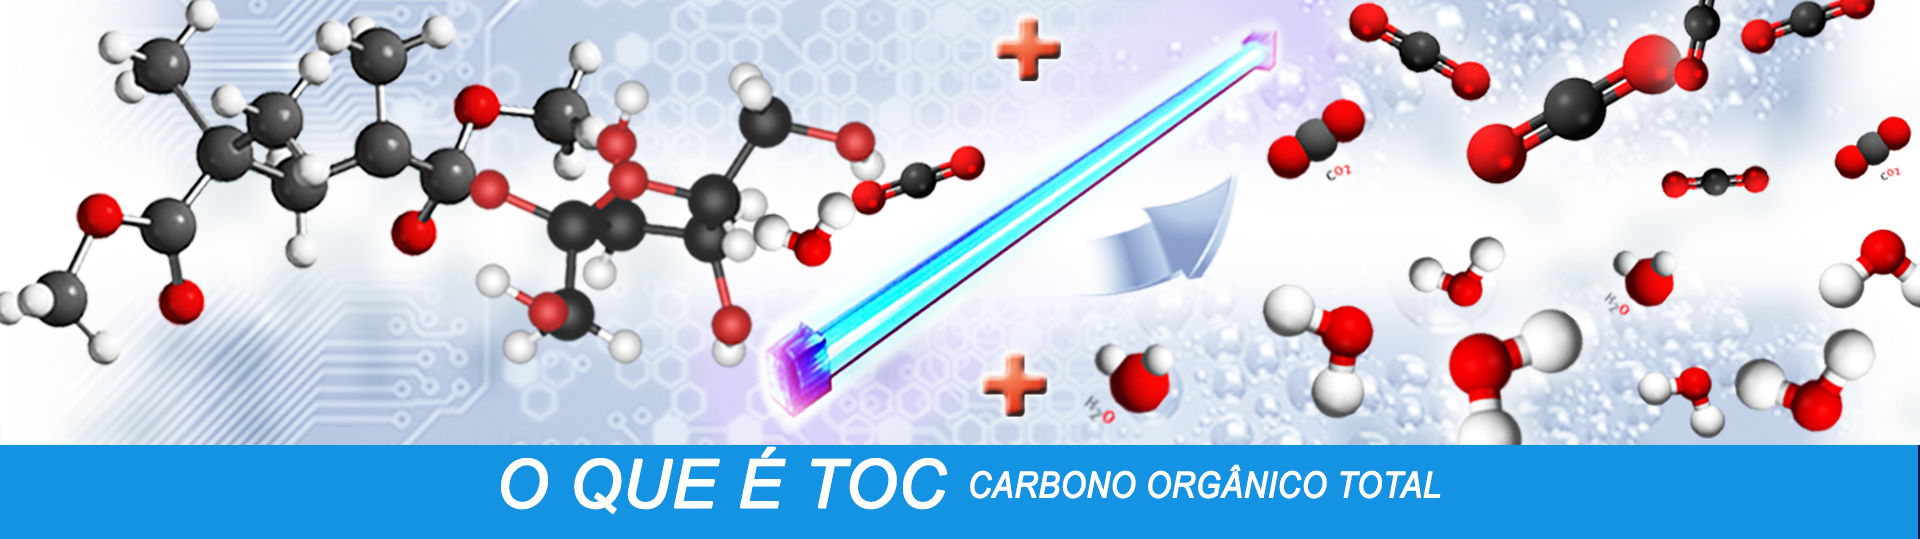 Reação fotocatalítica em análise de TOC